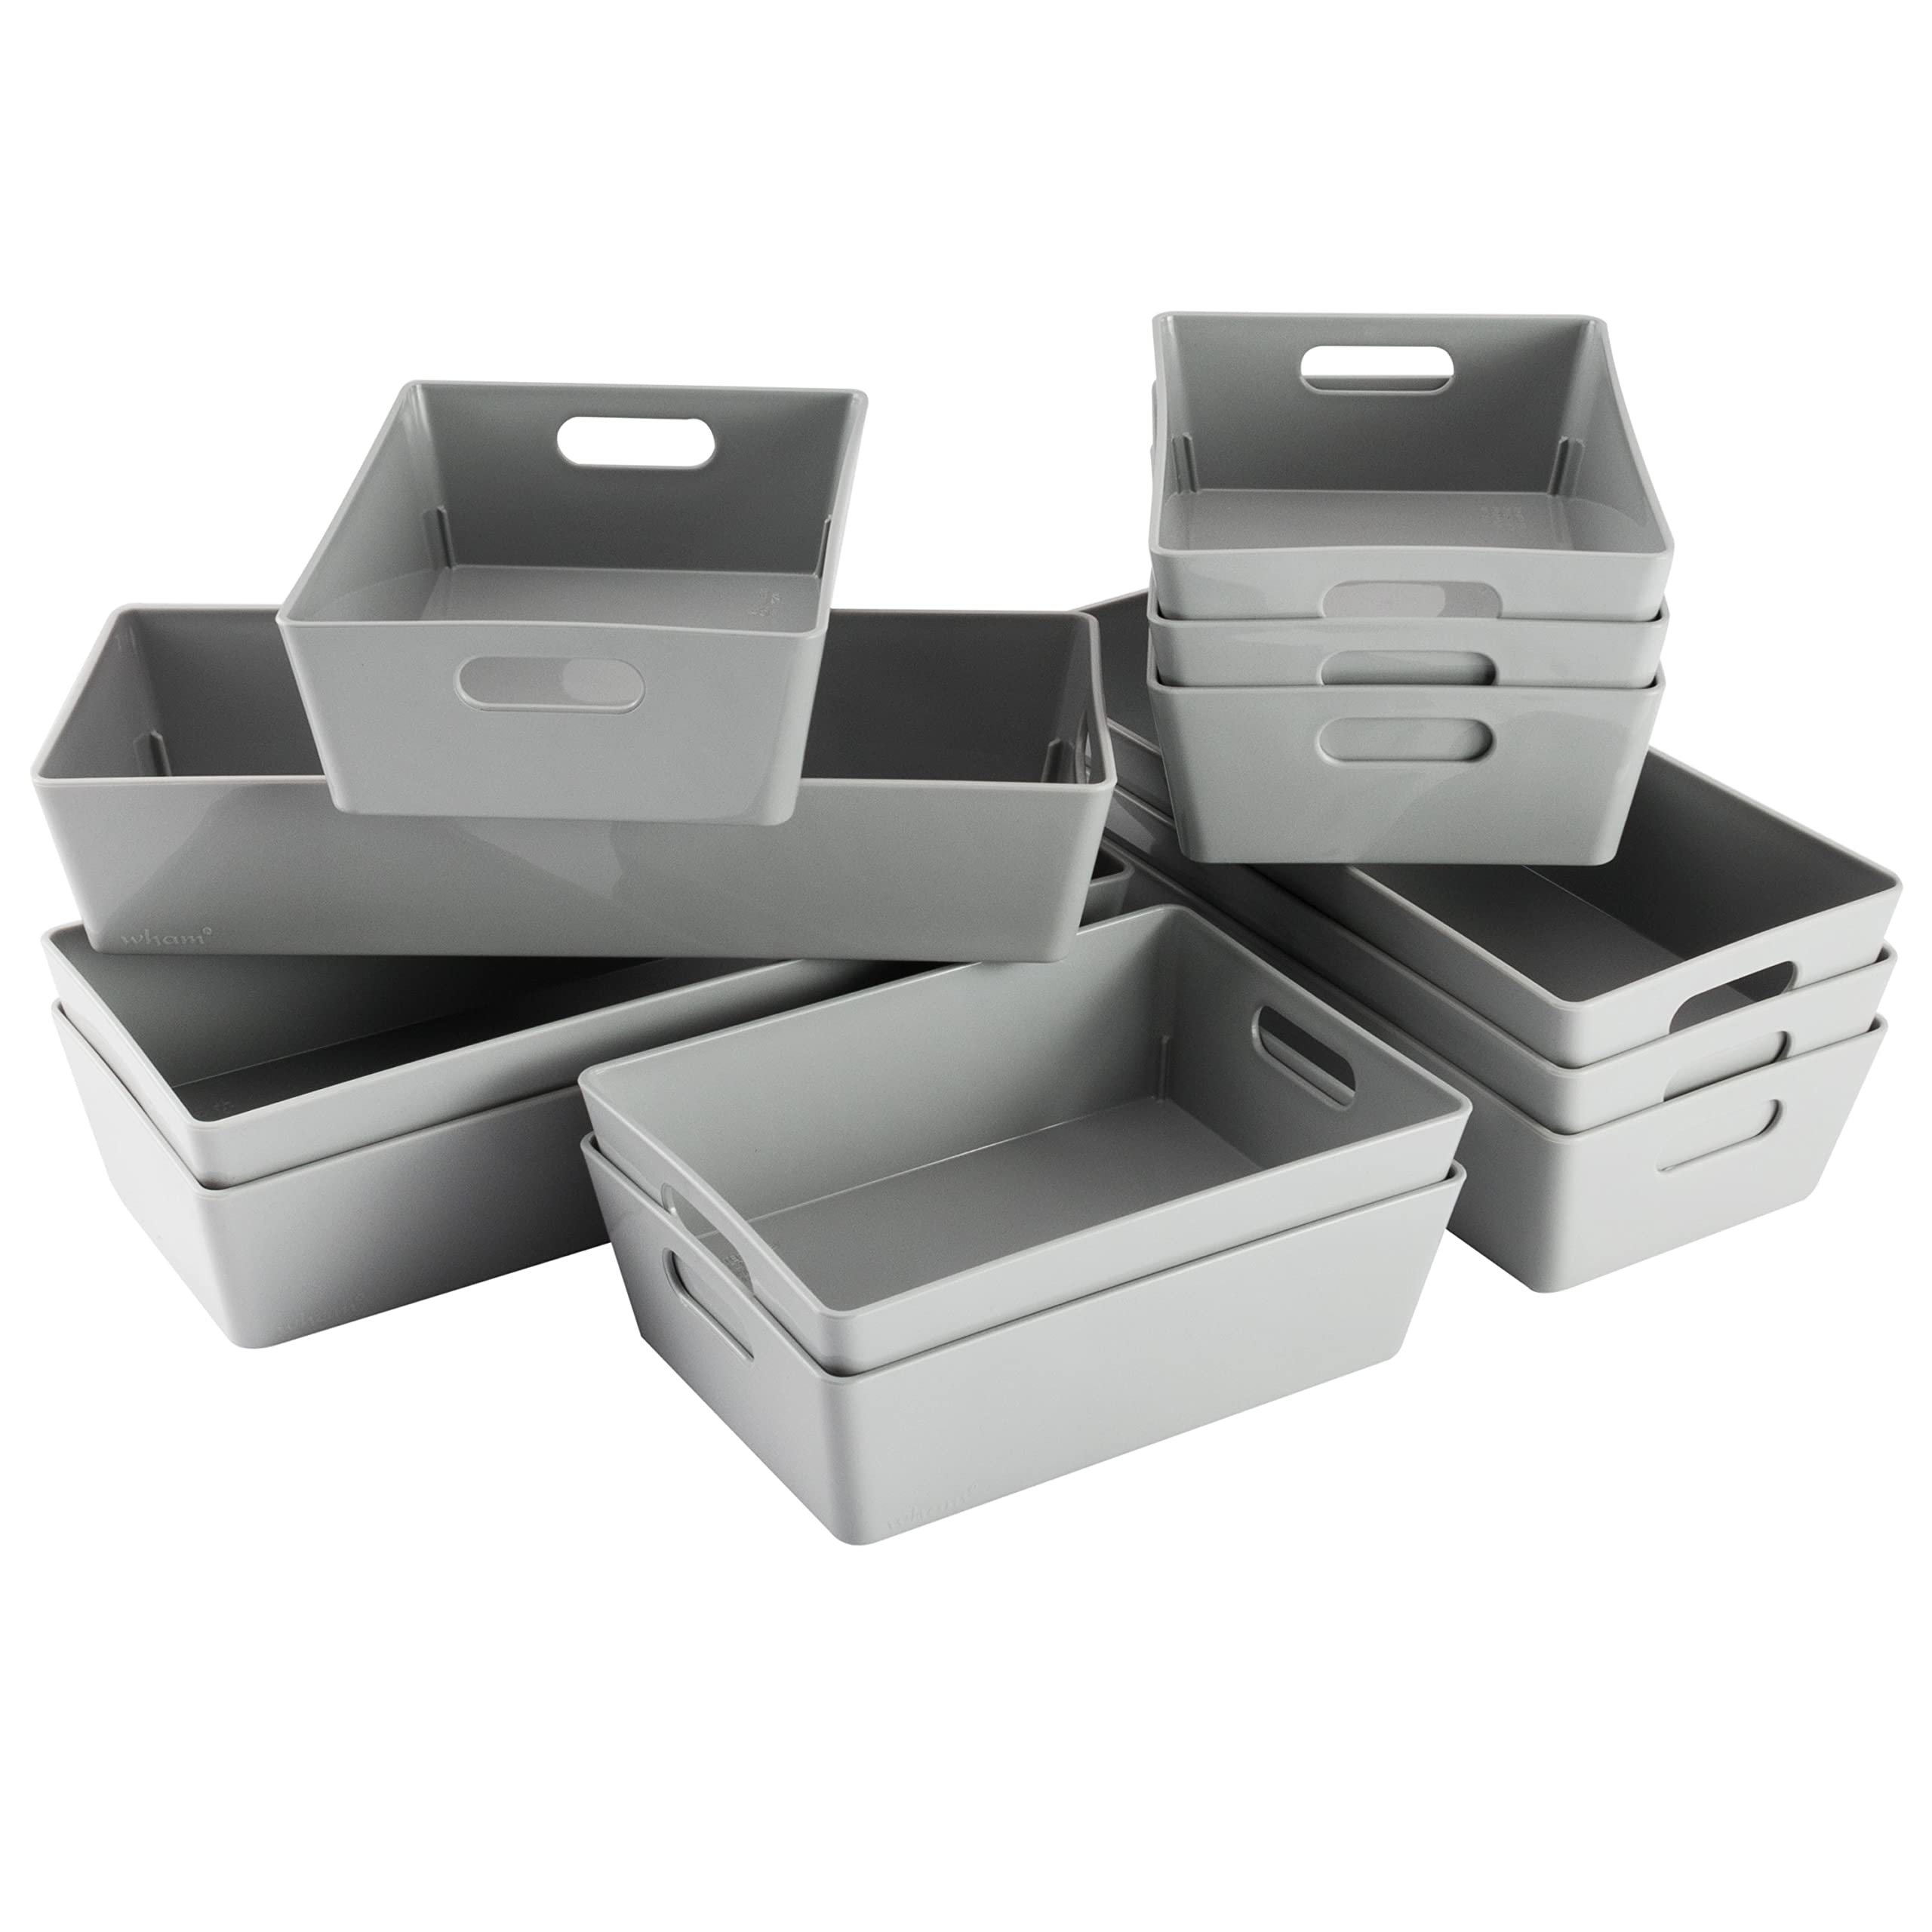 Hummelladen Schminktisch Schubladen Organizer Set - 12 Teile - Ordnungssystem - grau - 5 cm hoch - Boxen in 2 Größen - Aufbewahrungsbox Box - Schubladeneinsatz 75x38 cm